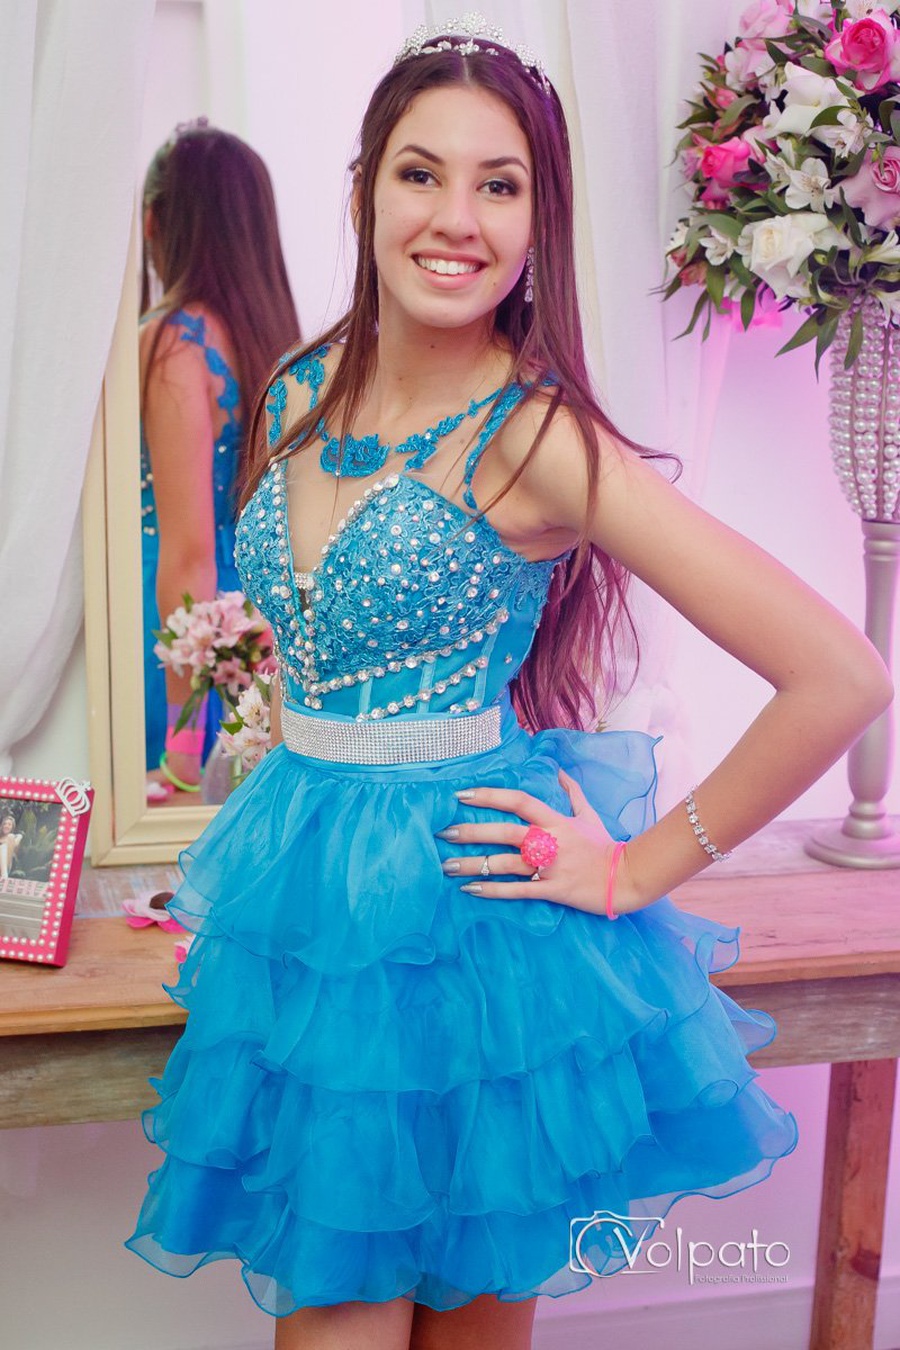 15 Anos | Cinthia Ramos de Andrade 